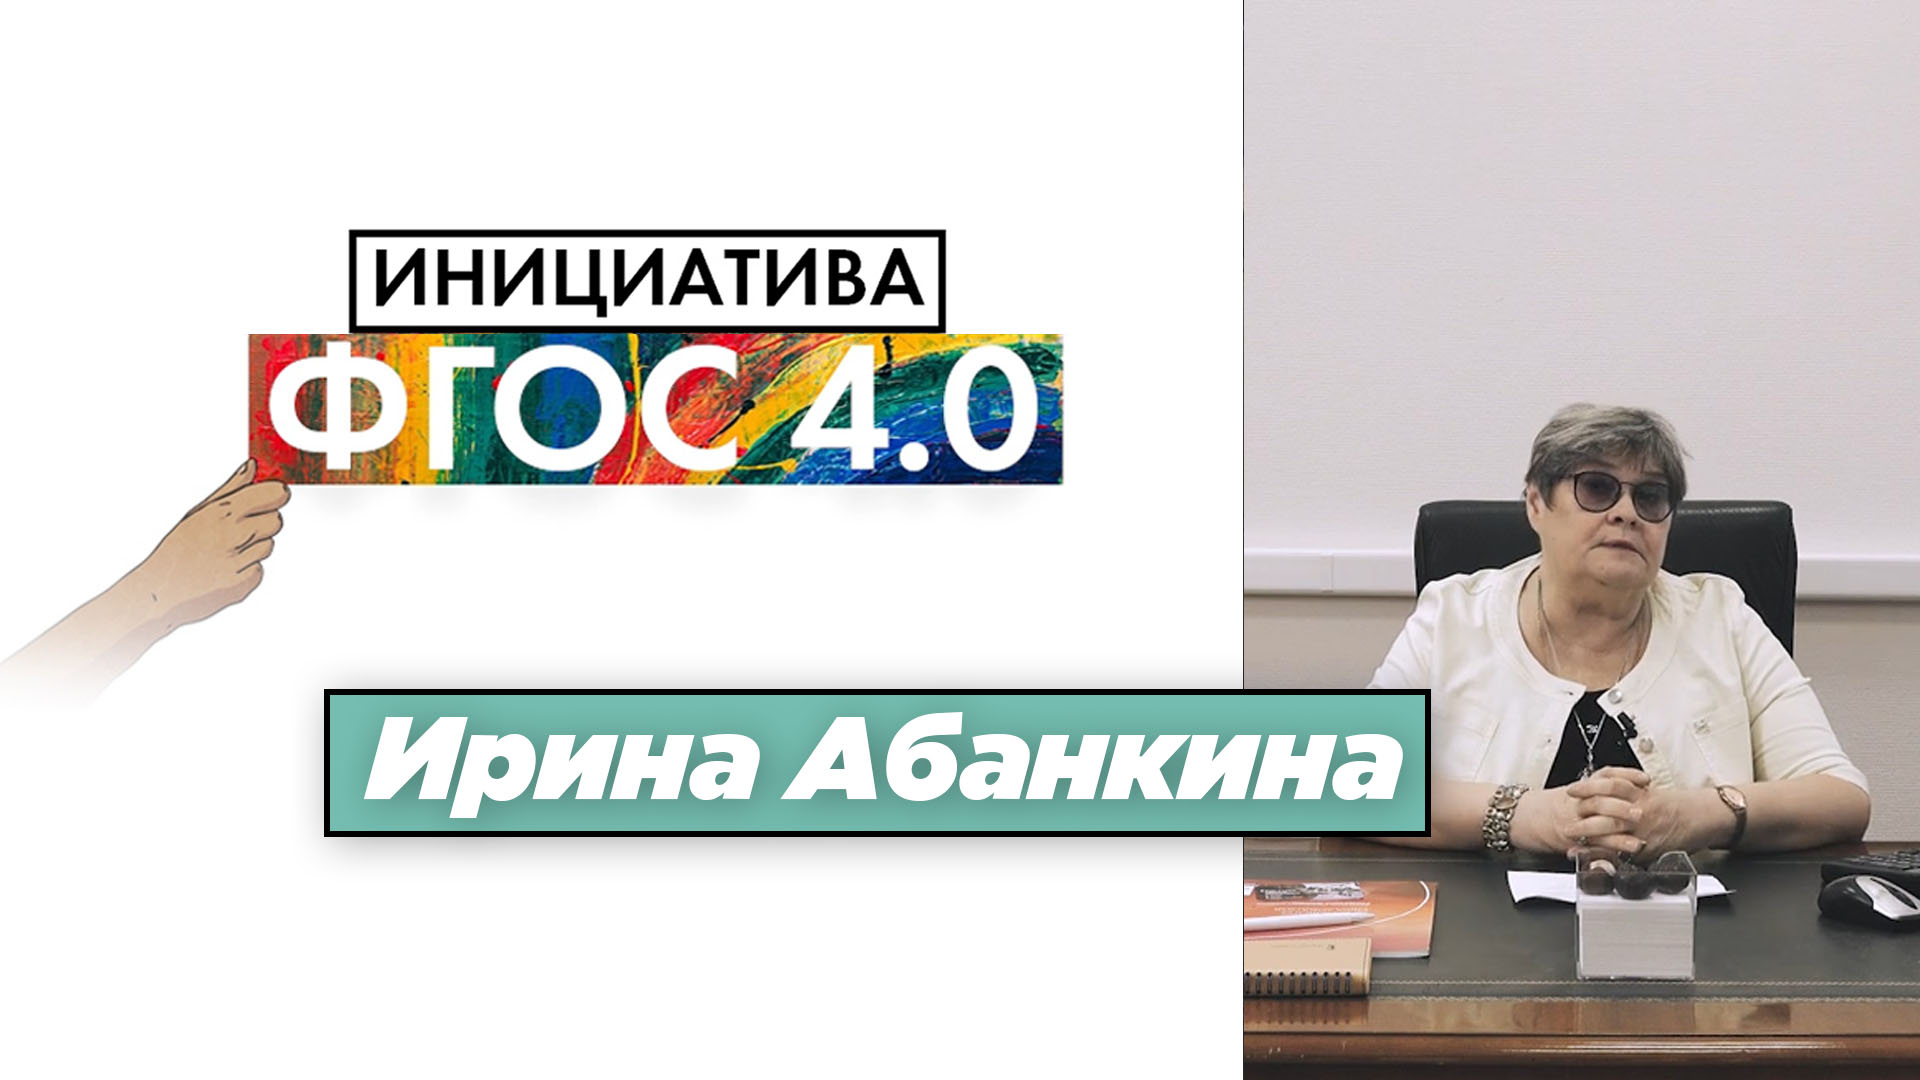 Ирина Абанкина: «Инициатива ФГОС 4.0.». Экономика